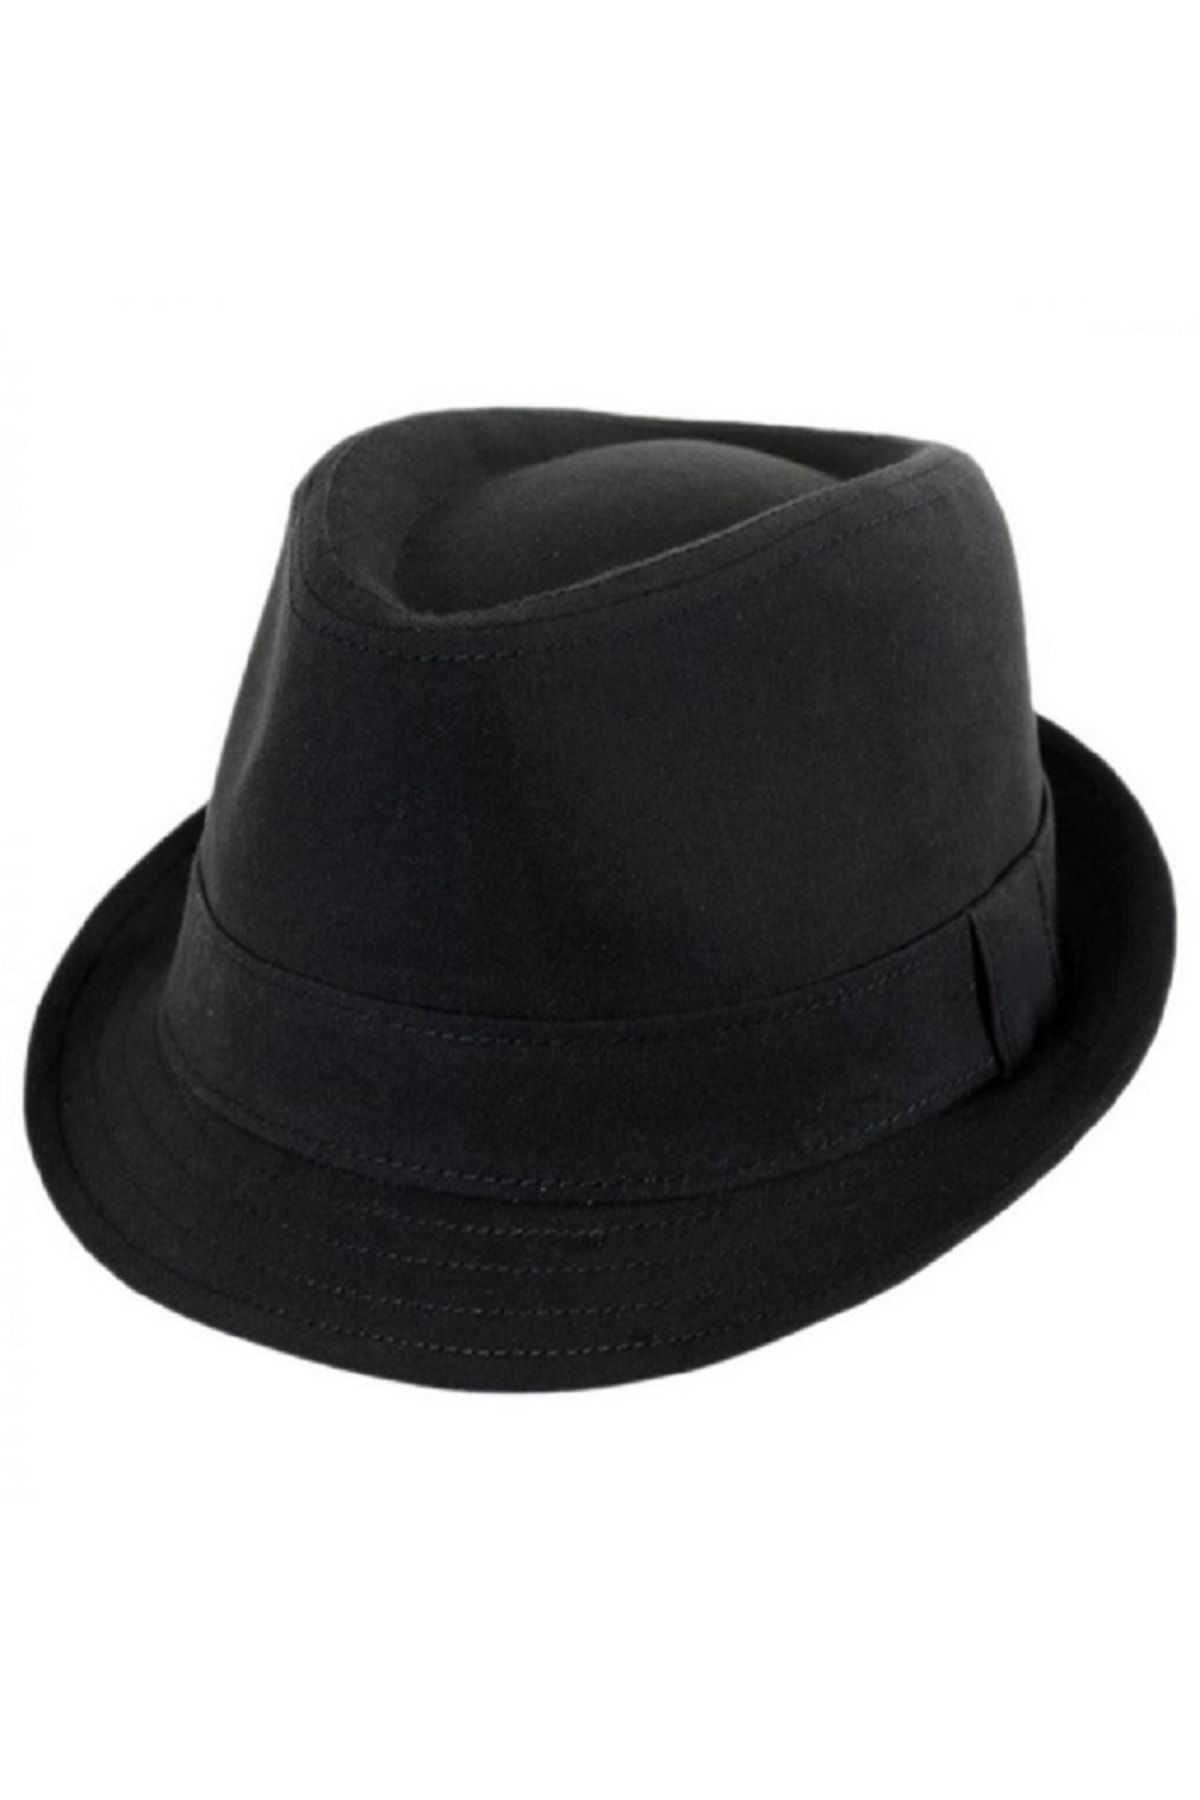 tahtakale marketi Michael Jackson Fötr Şapka Siyah Yetişkin Boy 58cm